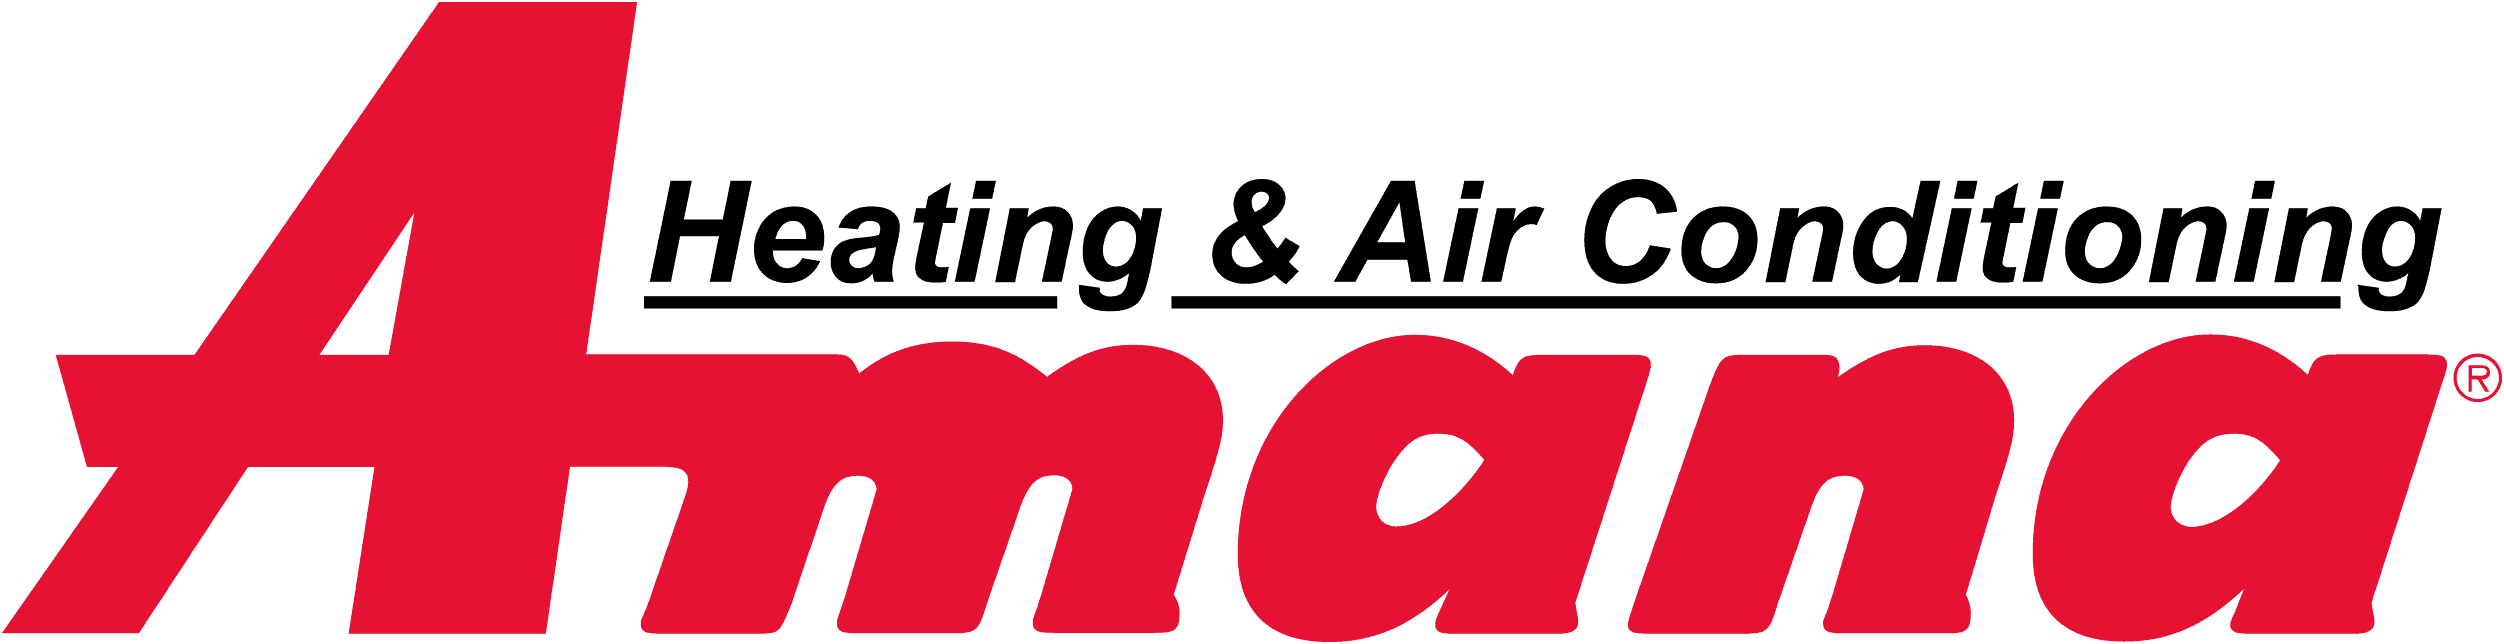 amana-vector-logo